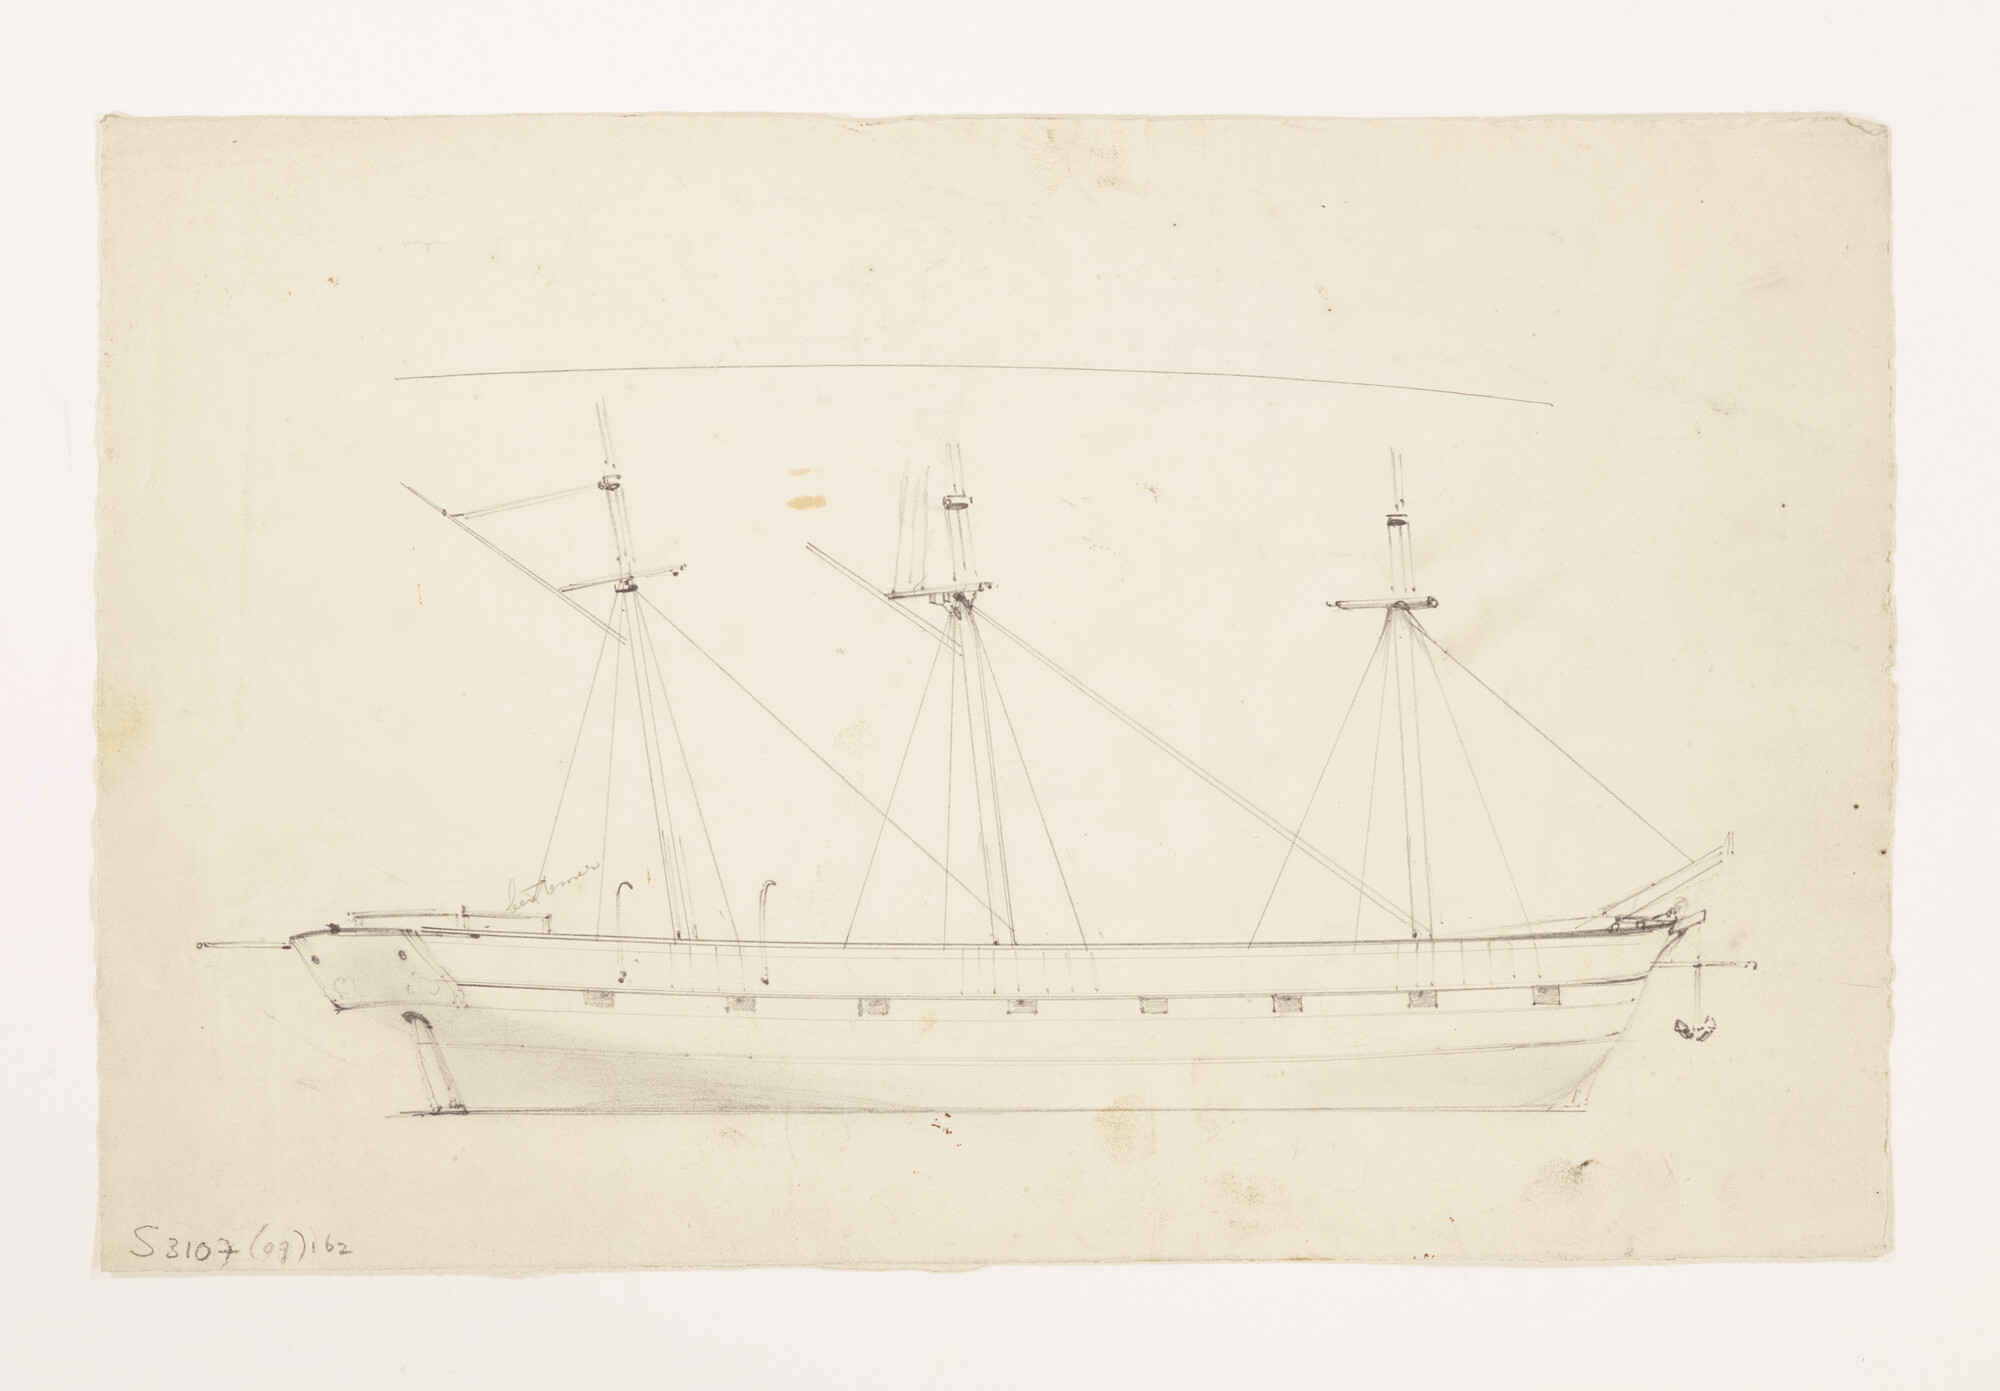 S.3107(07)162; Schets van een driemastzeilschip in aanbouw; tekening